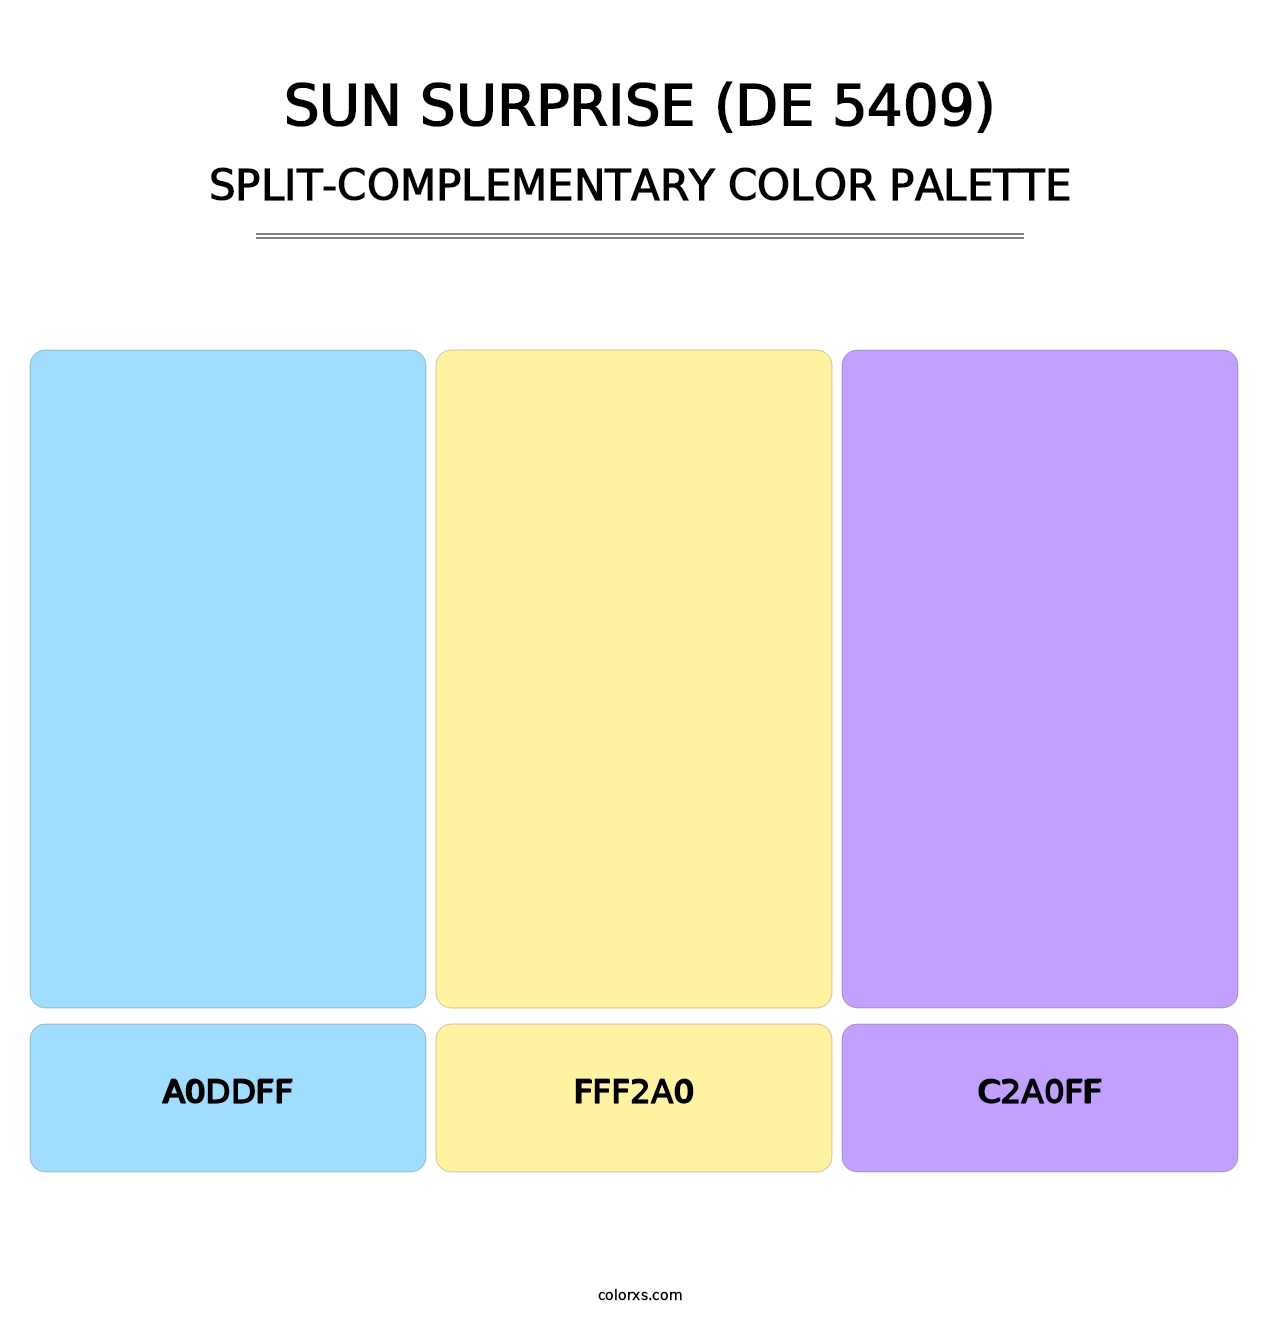 Sun Surprise (DE 5409) - Split-Complementary Color Palette